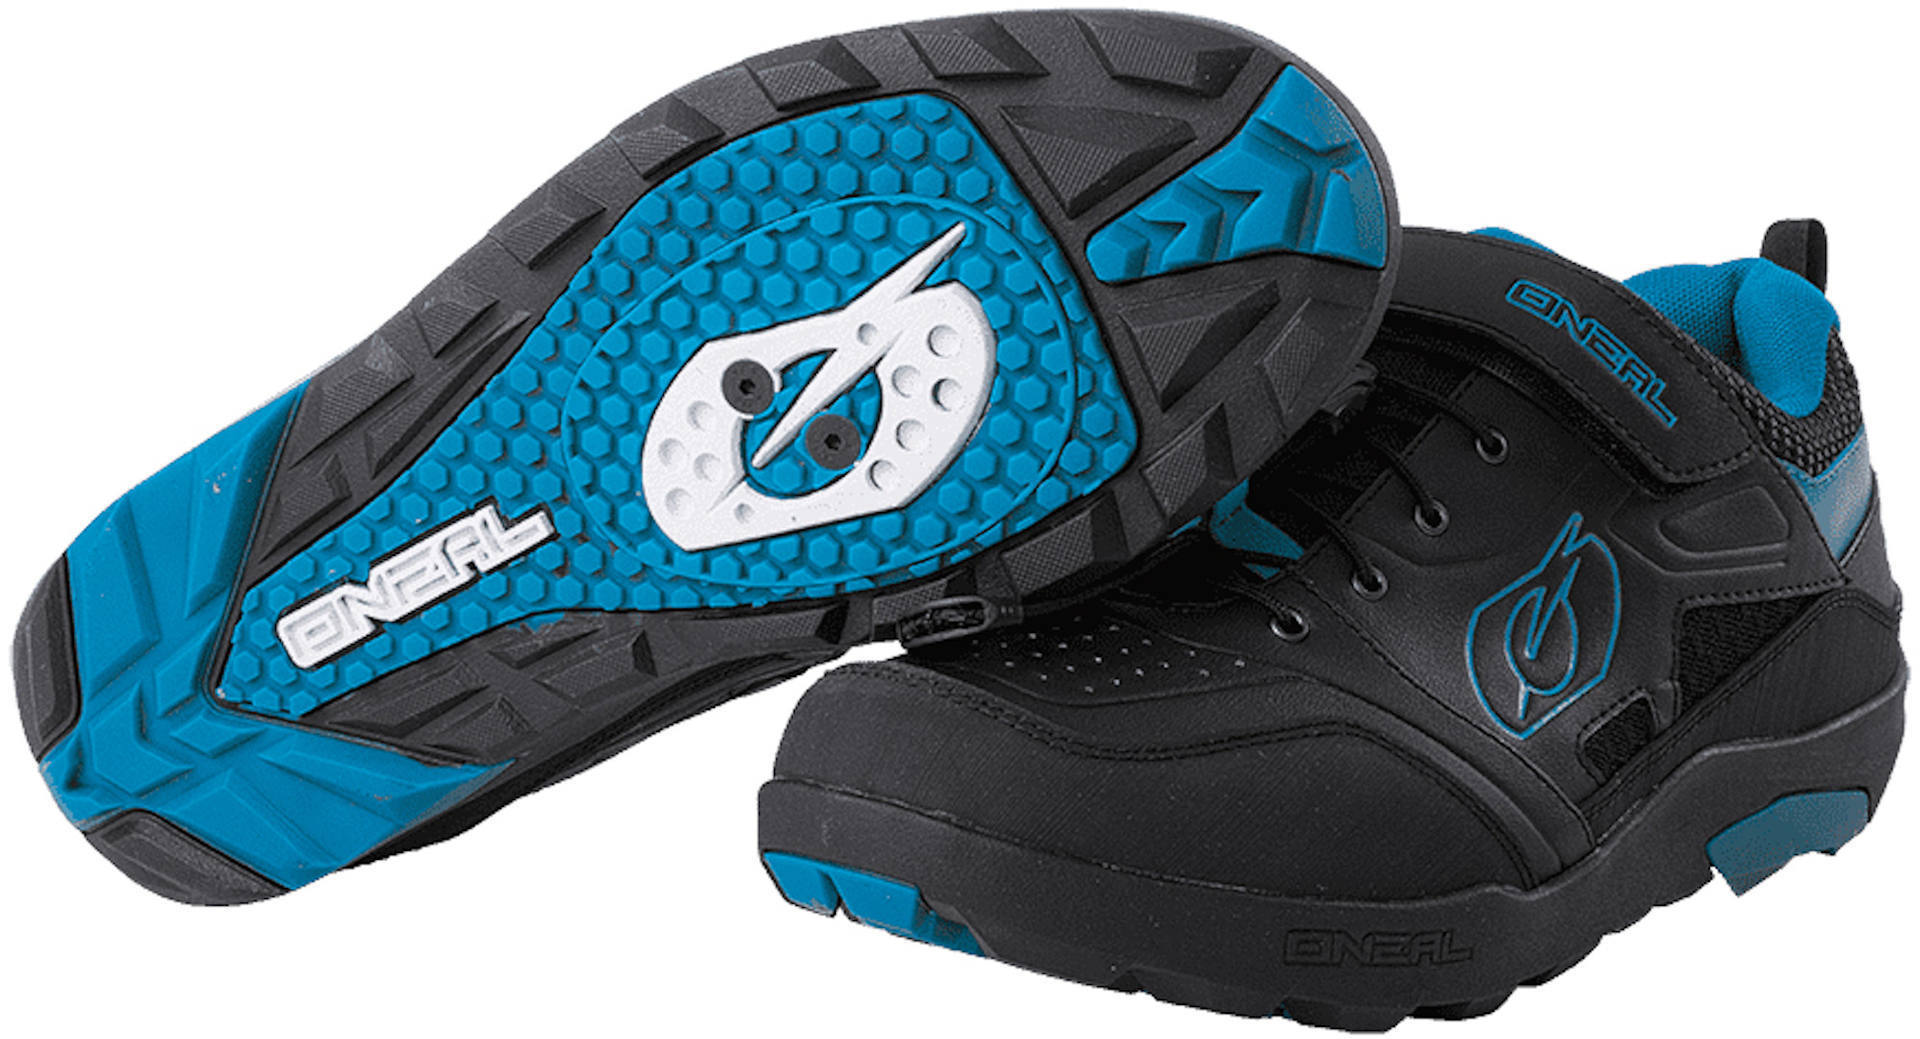 Oneal Traverse SPD Schuhe, schwarz-blau, Größe 40, schwarz-blau, Größe 40